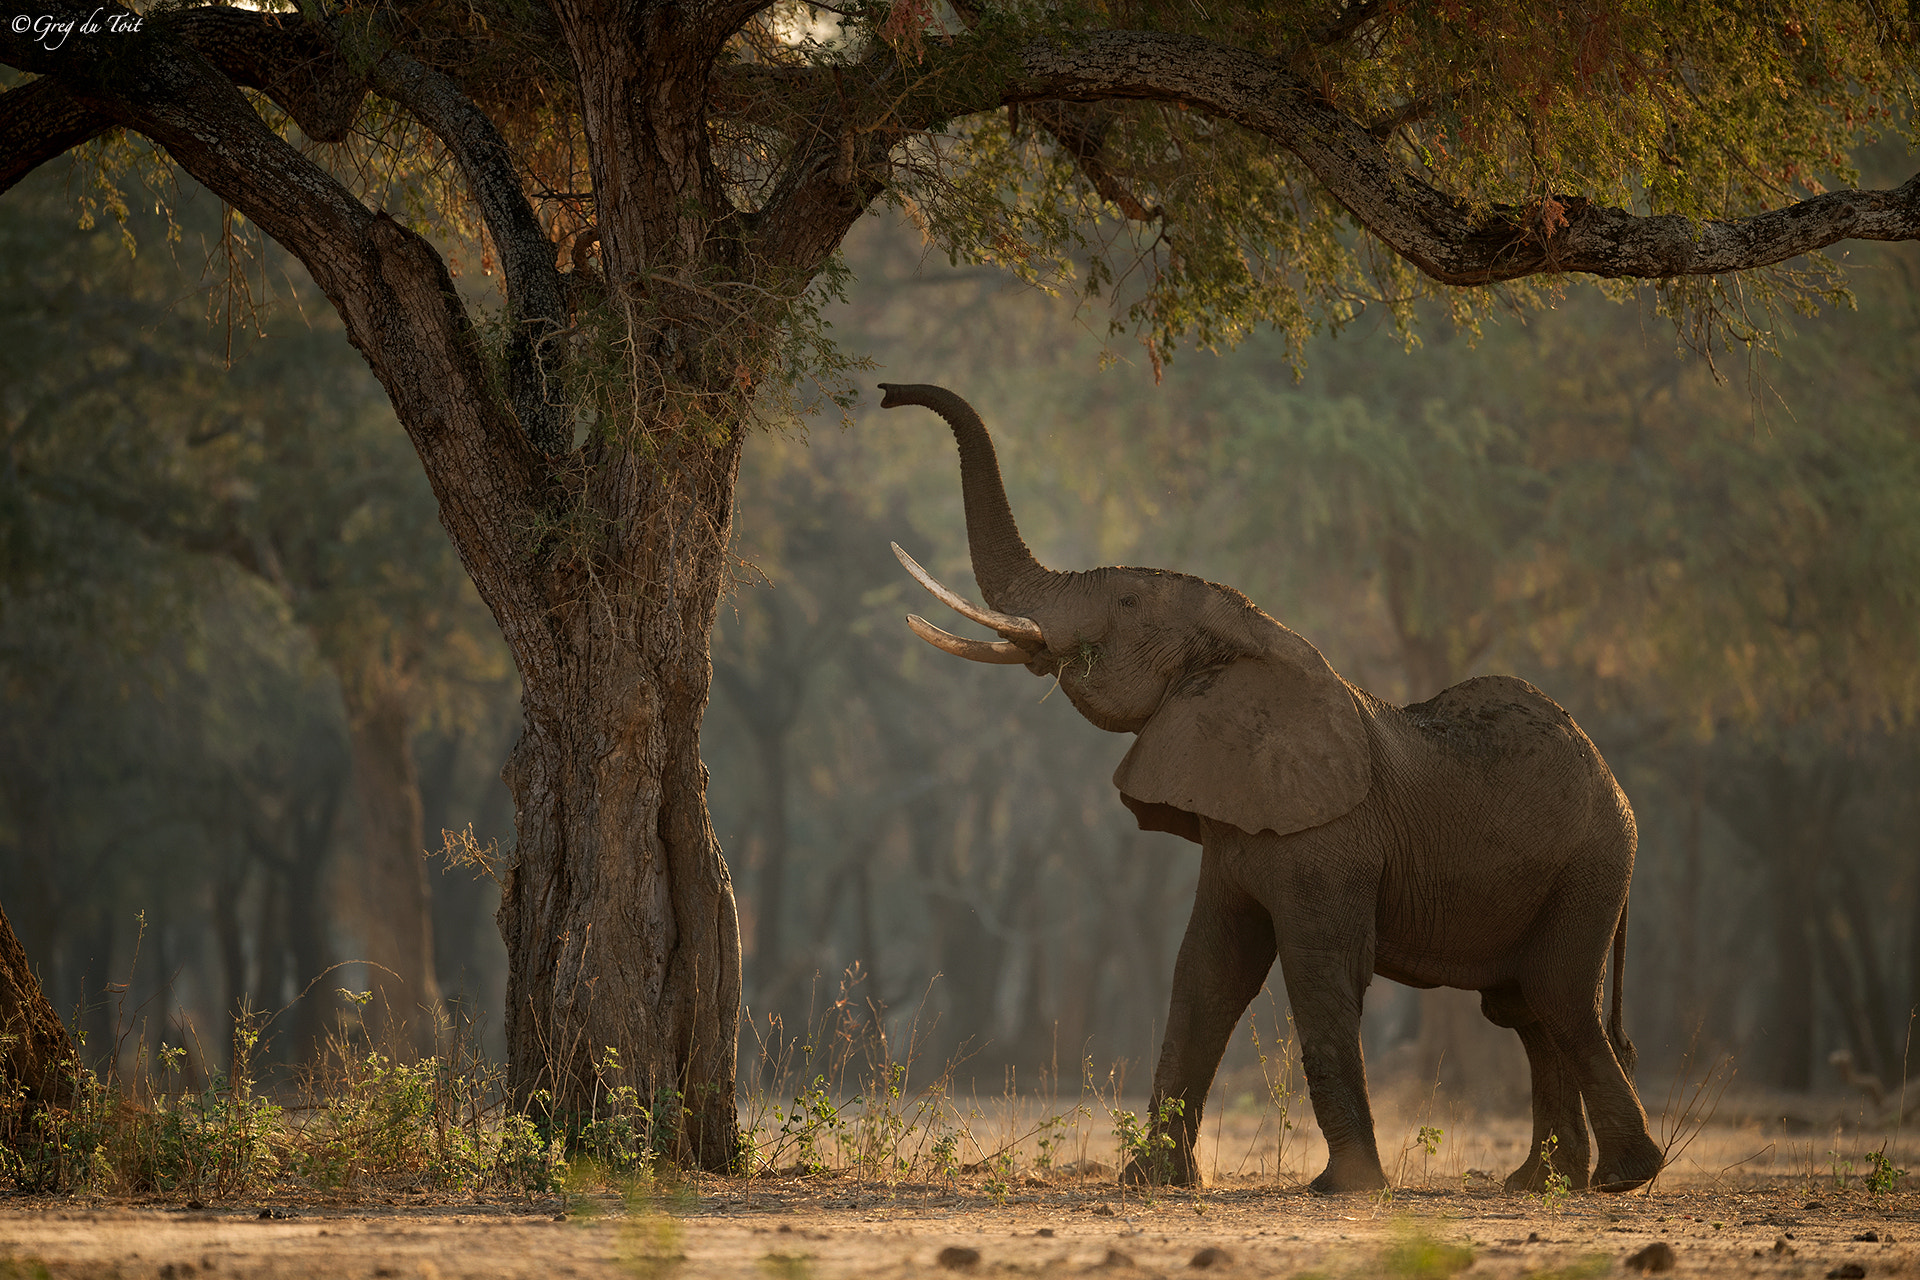 Nikon AF-S Nikkor 500mm F4E FL ED VR sample photo. Golden elephant forest photography